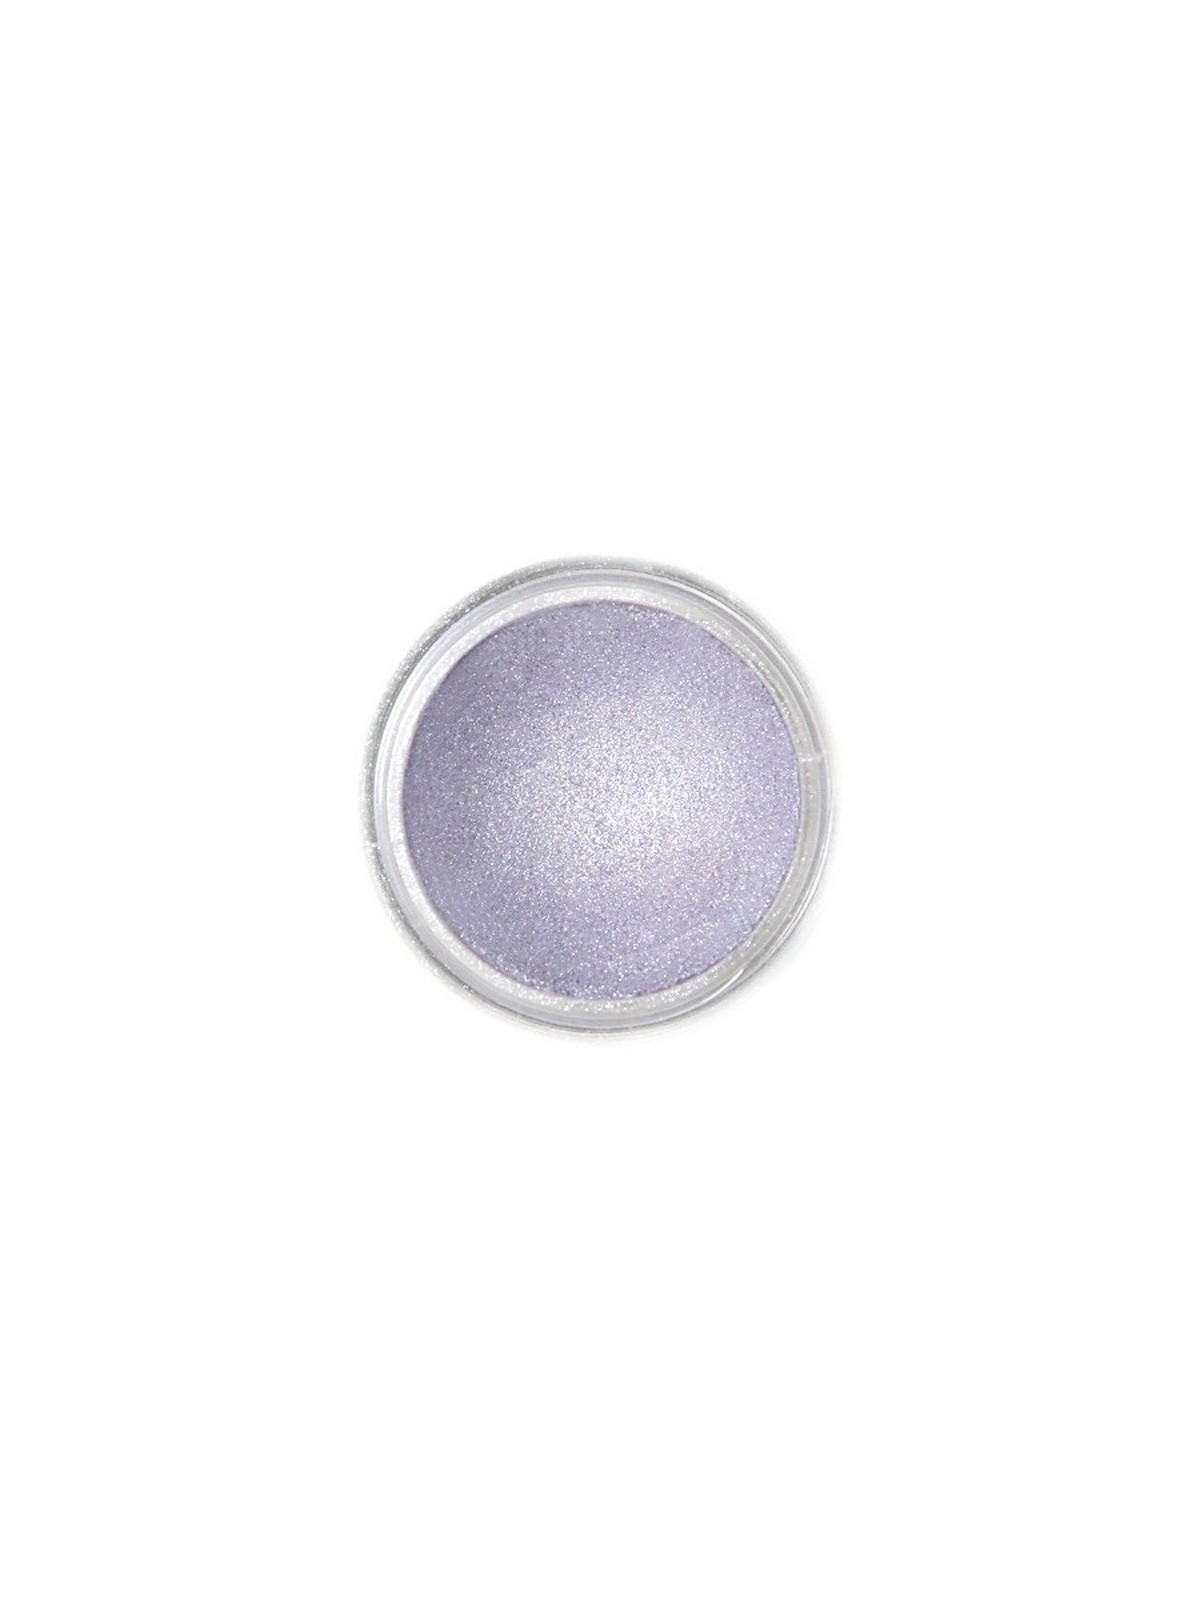 Dekoracyjna pudrowa farba perłowa Fractal - Moonlight Lilac, Holdfény liliowy (2,5 g)